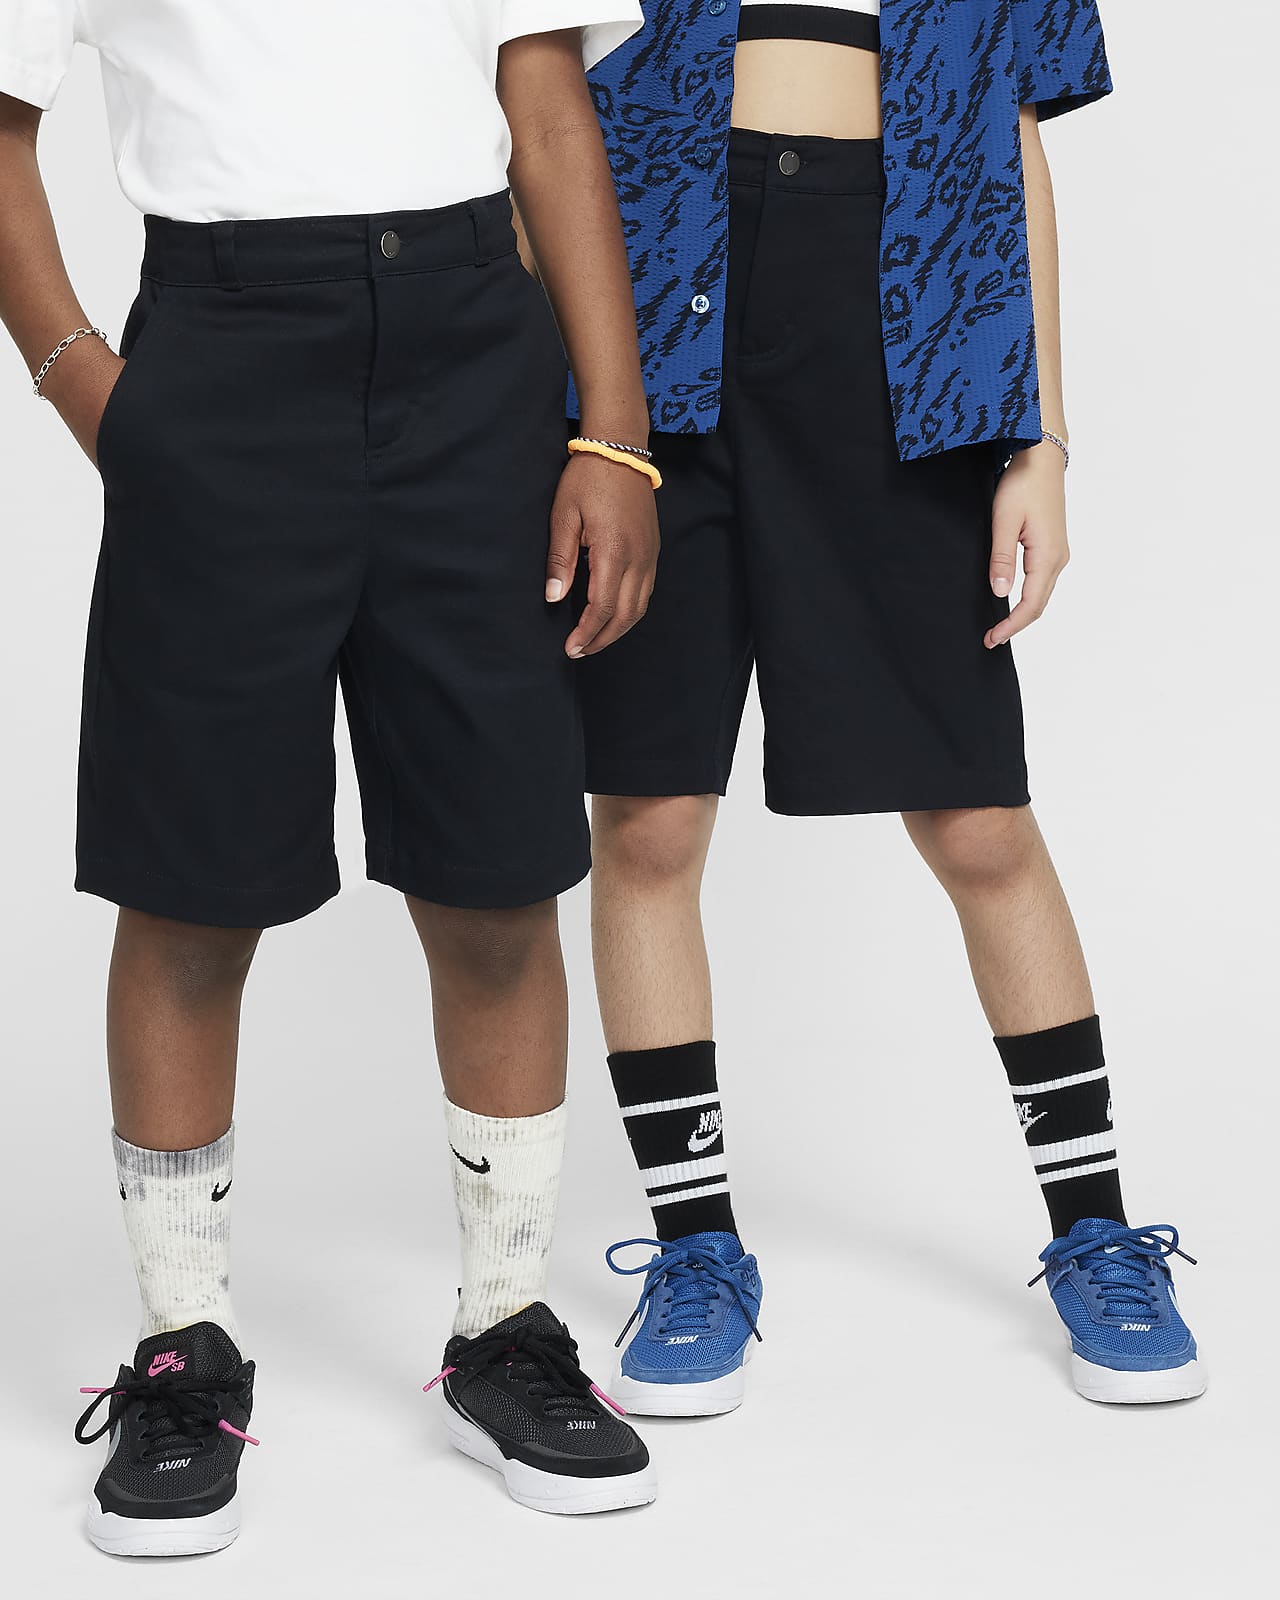 Shorts chinos para skateboarding para niños talla grande Nike SB